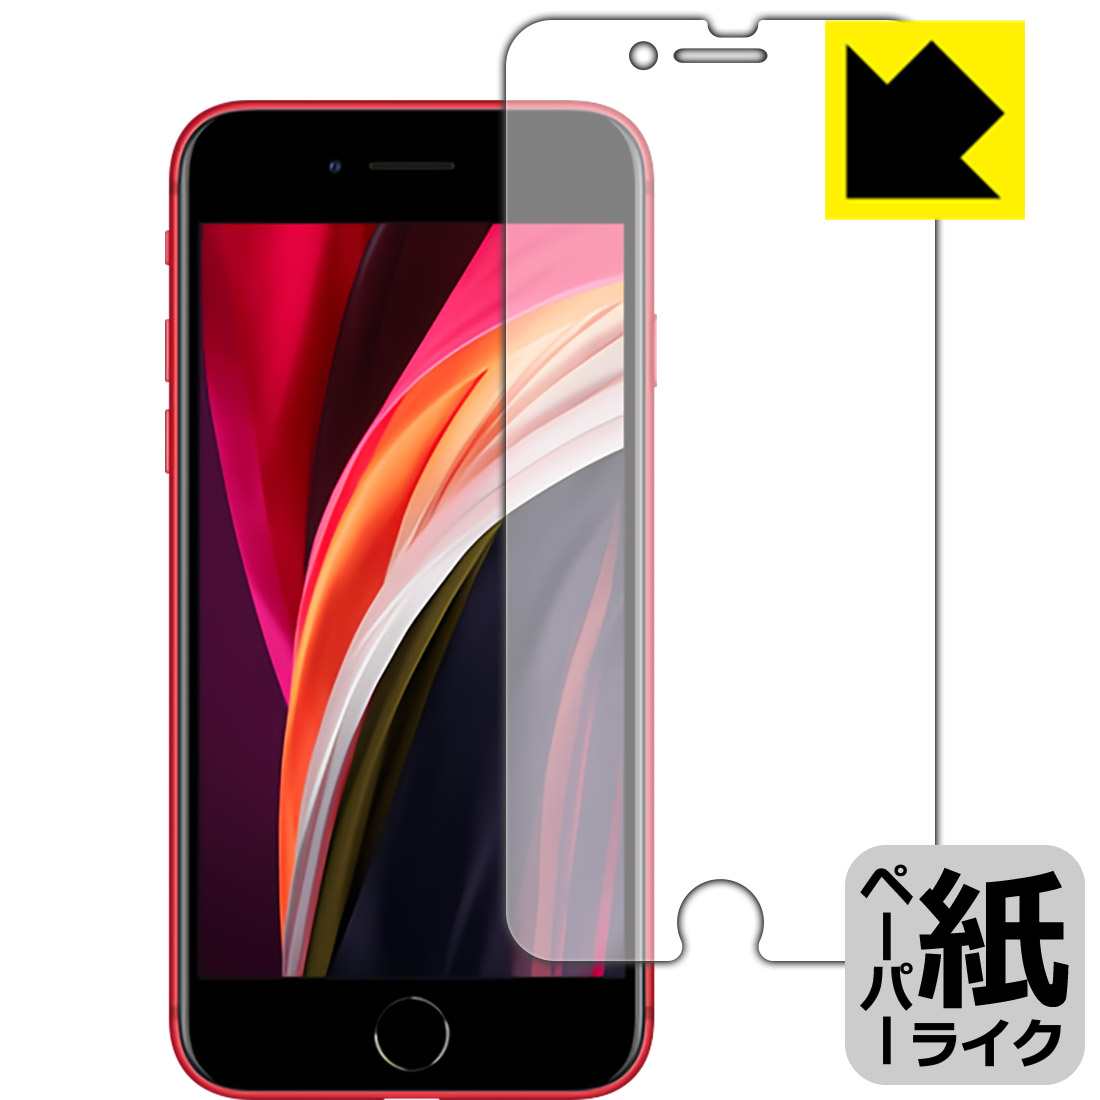 ペーパーライク反射防止タイプ 非光沢 iPhone SE 第2世代 2020年発売モデル ペーパーライク保護フィルム 専用保護フィルム 公式 前面のみ 保護シート バーゲンセール smtb-kd